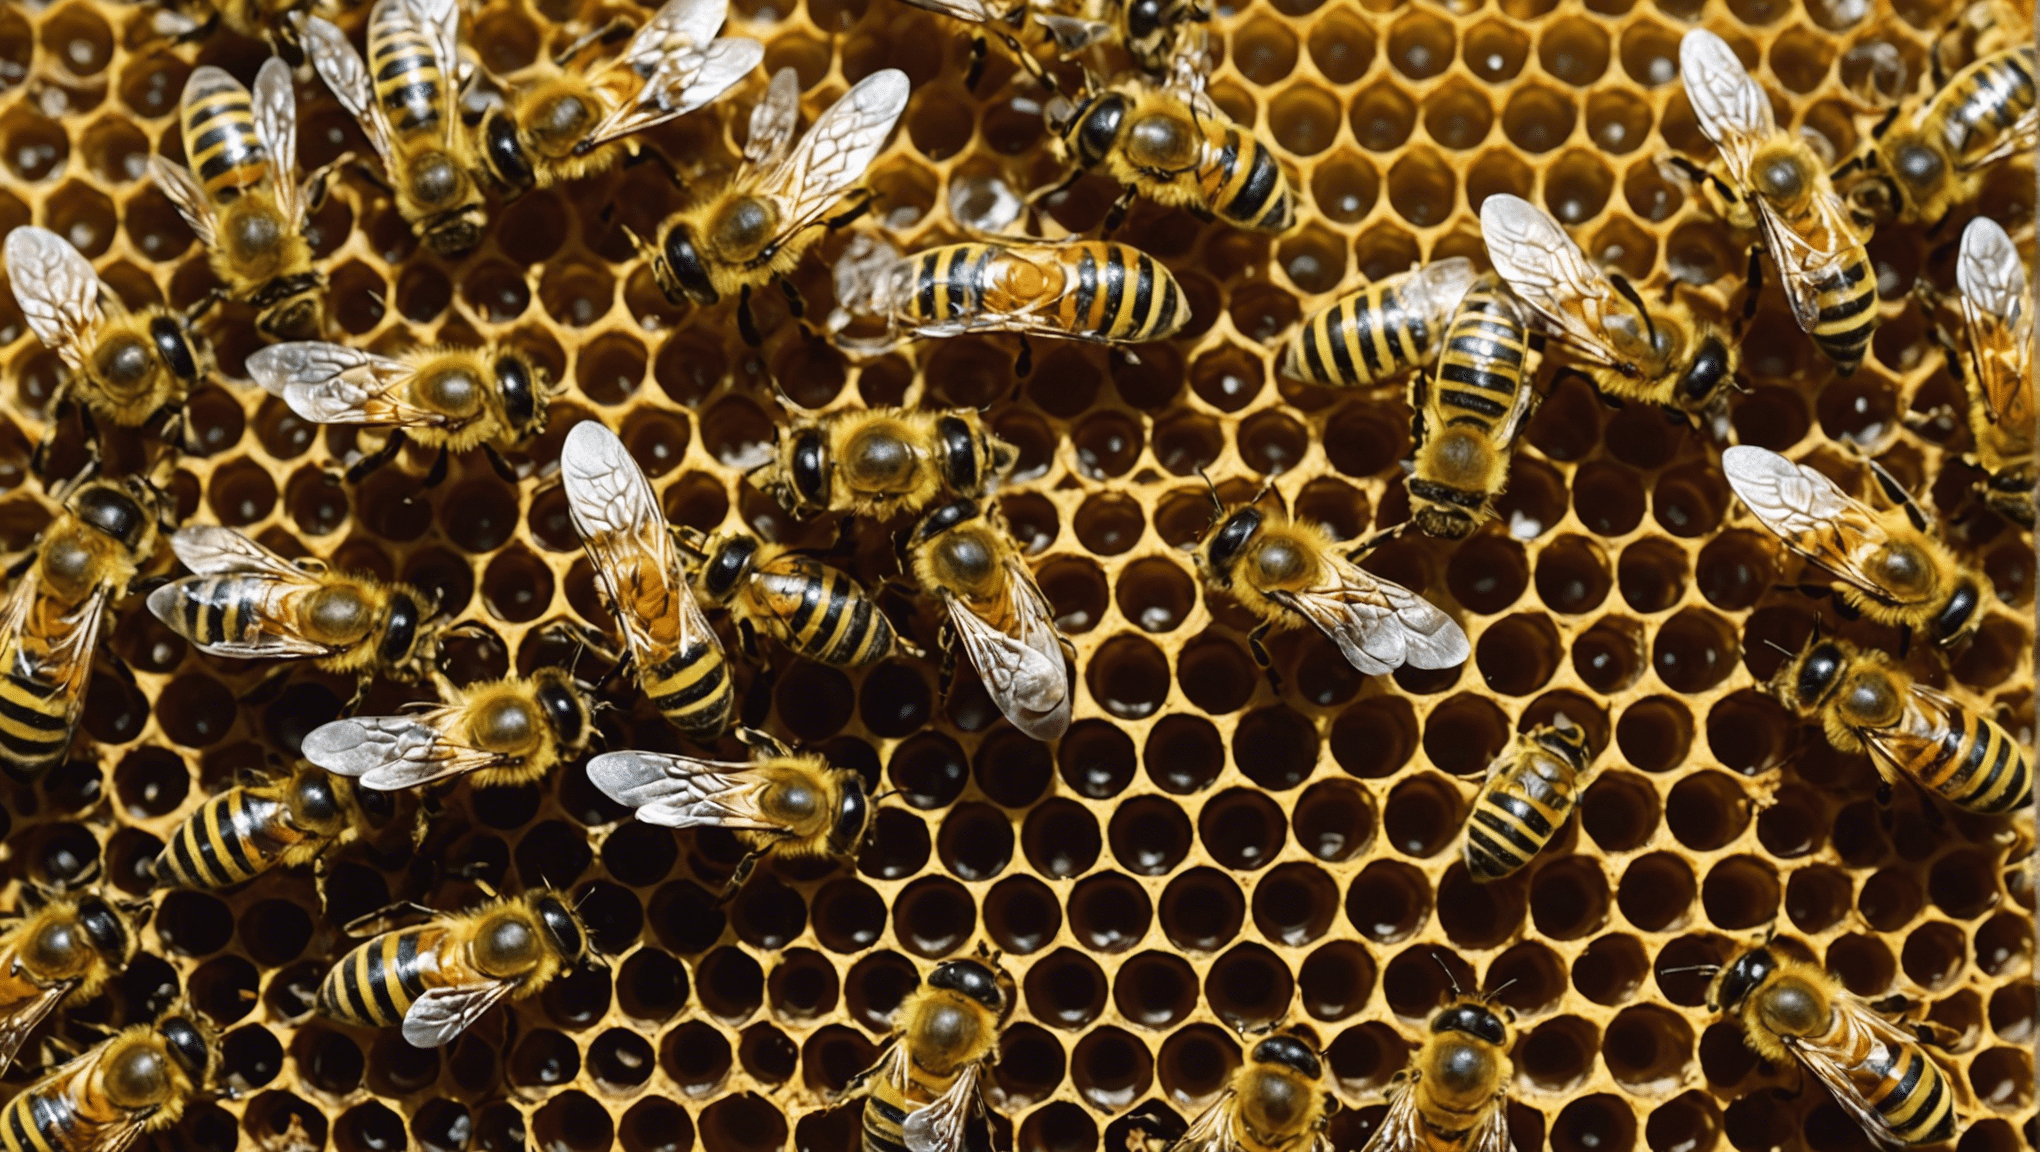 꿀벌의 숨겨진 보물, 즉 자연에서의 꿀벌의 중요한 역할, 꿀과 프로폴리스의 생산, 환경에 미치는 영향에 대해 알아보세요.